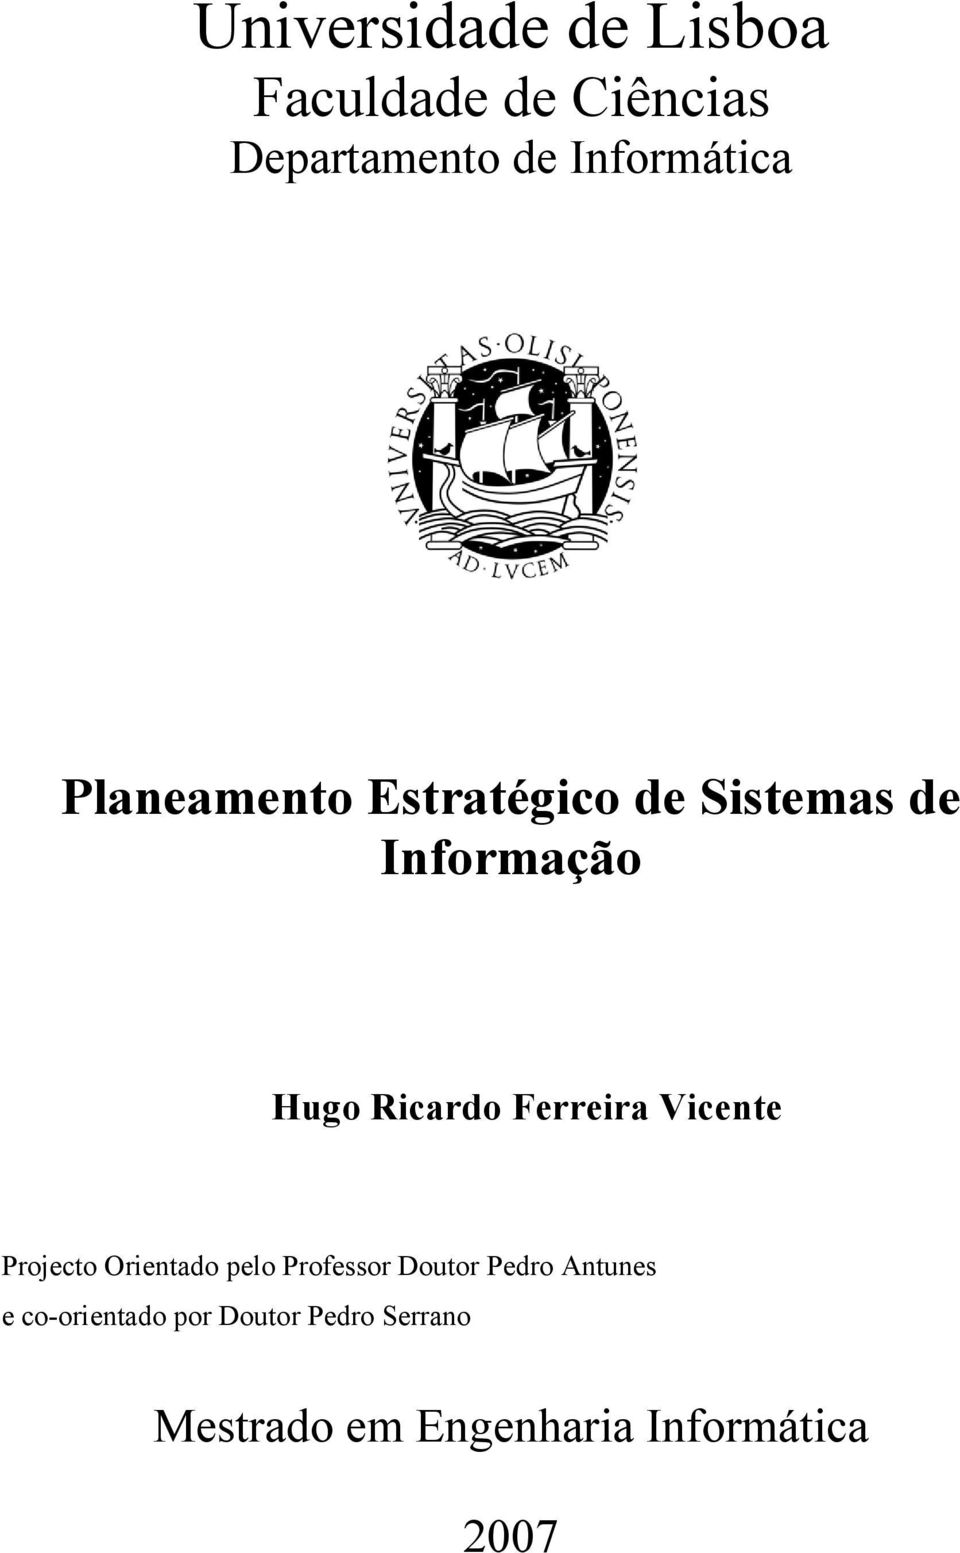 Ricardo Ferreira Vicente Projecto Orientado pelo Professor Doutor Pedro